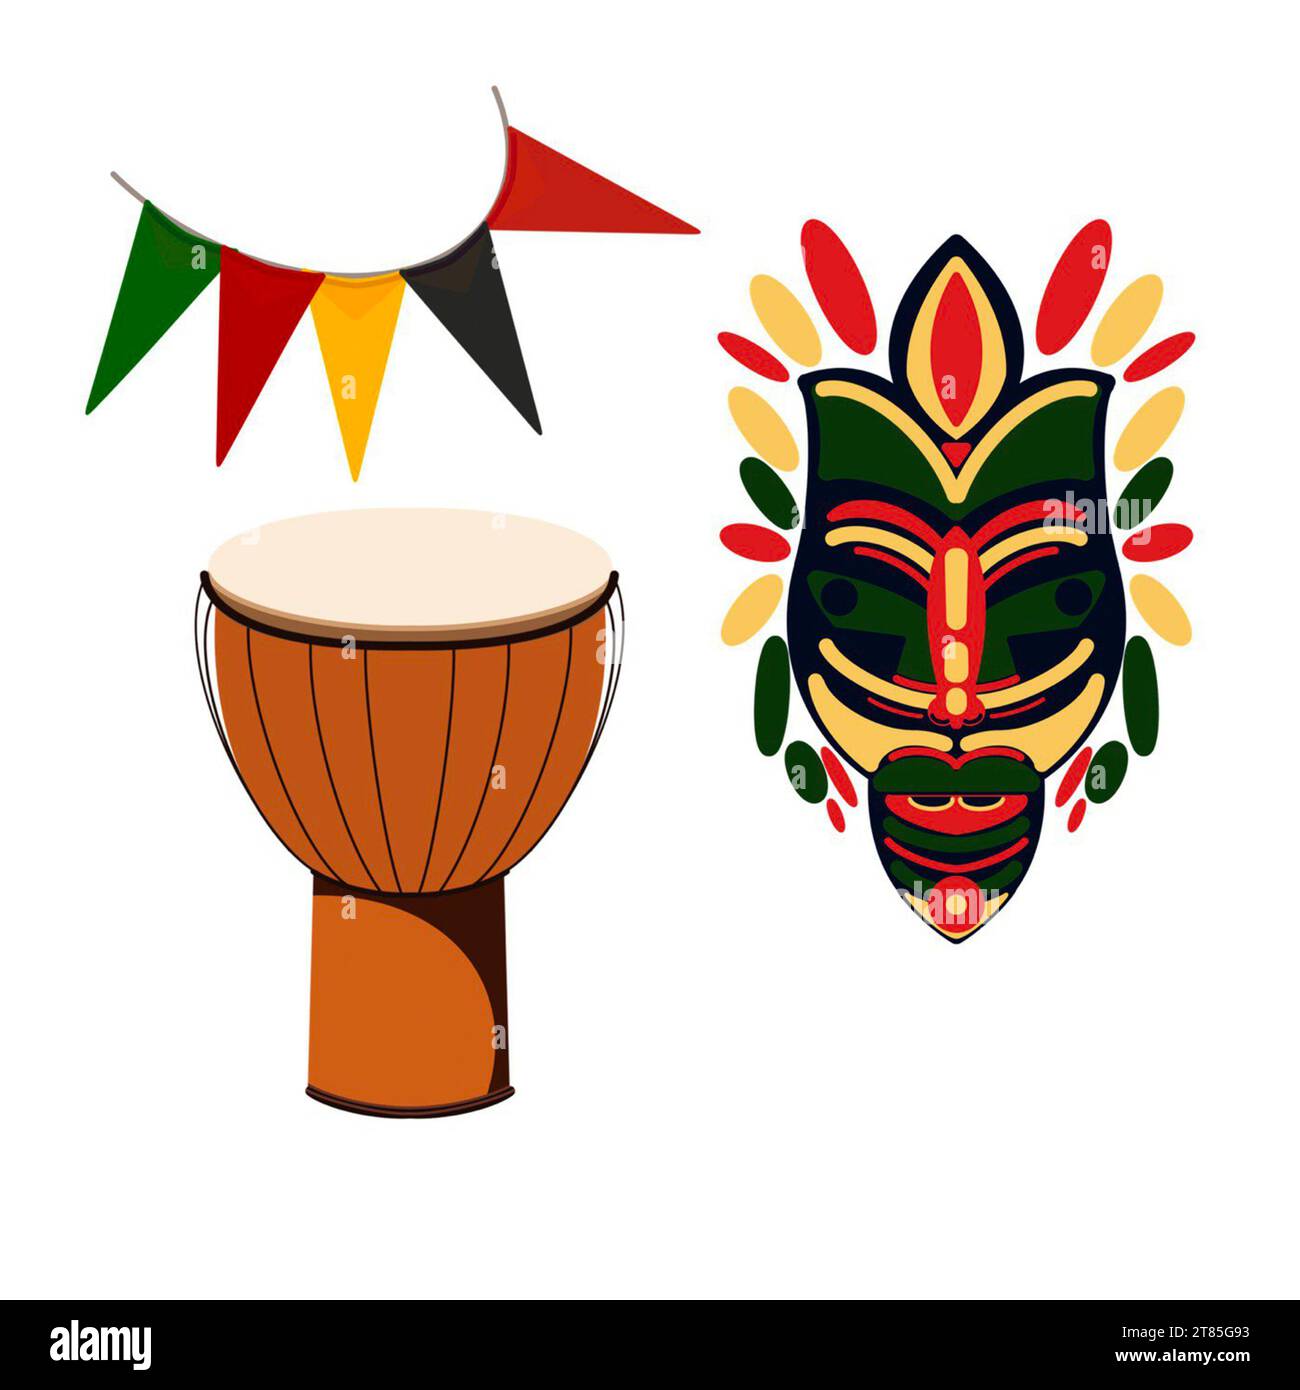 masque en bois, tambour africain et drapeaux sur illustration kwanzaa sur fond blanc dessiné à la main Banque D'Images